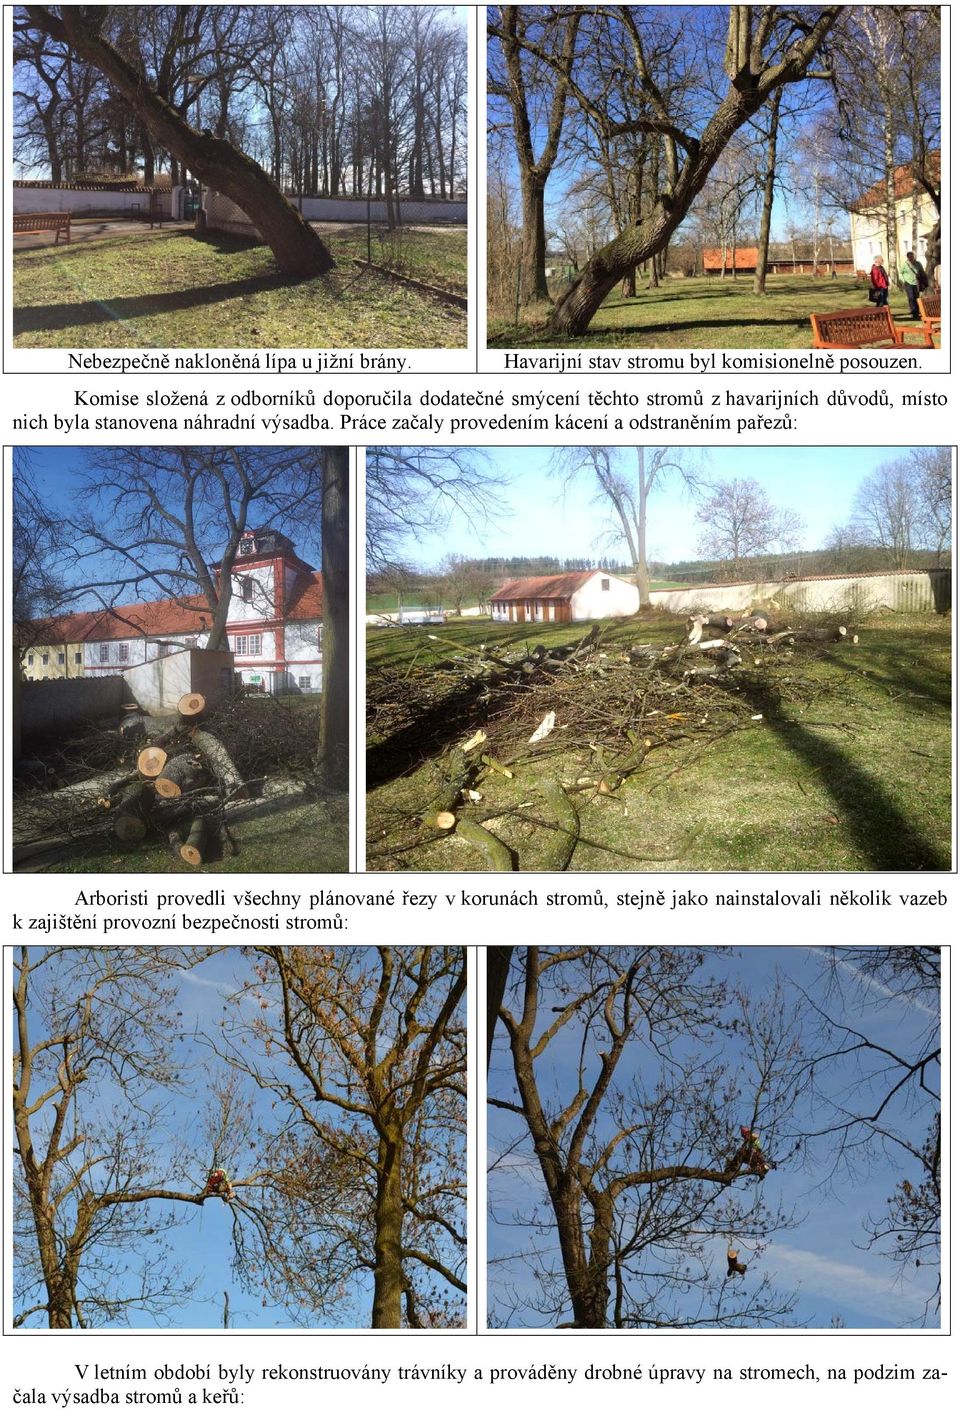 Práce začaly provedením kácení a odstraněním pařezů: Arboristi provedli všechny plánované řezy v korunách stromů, stejně jako